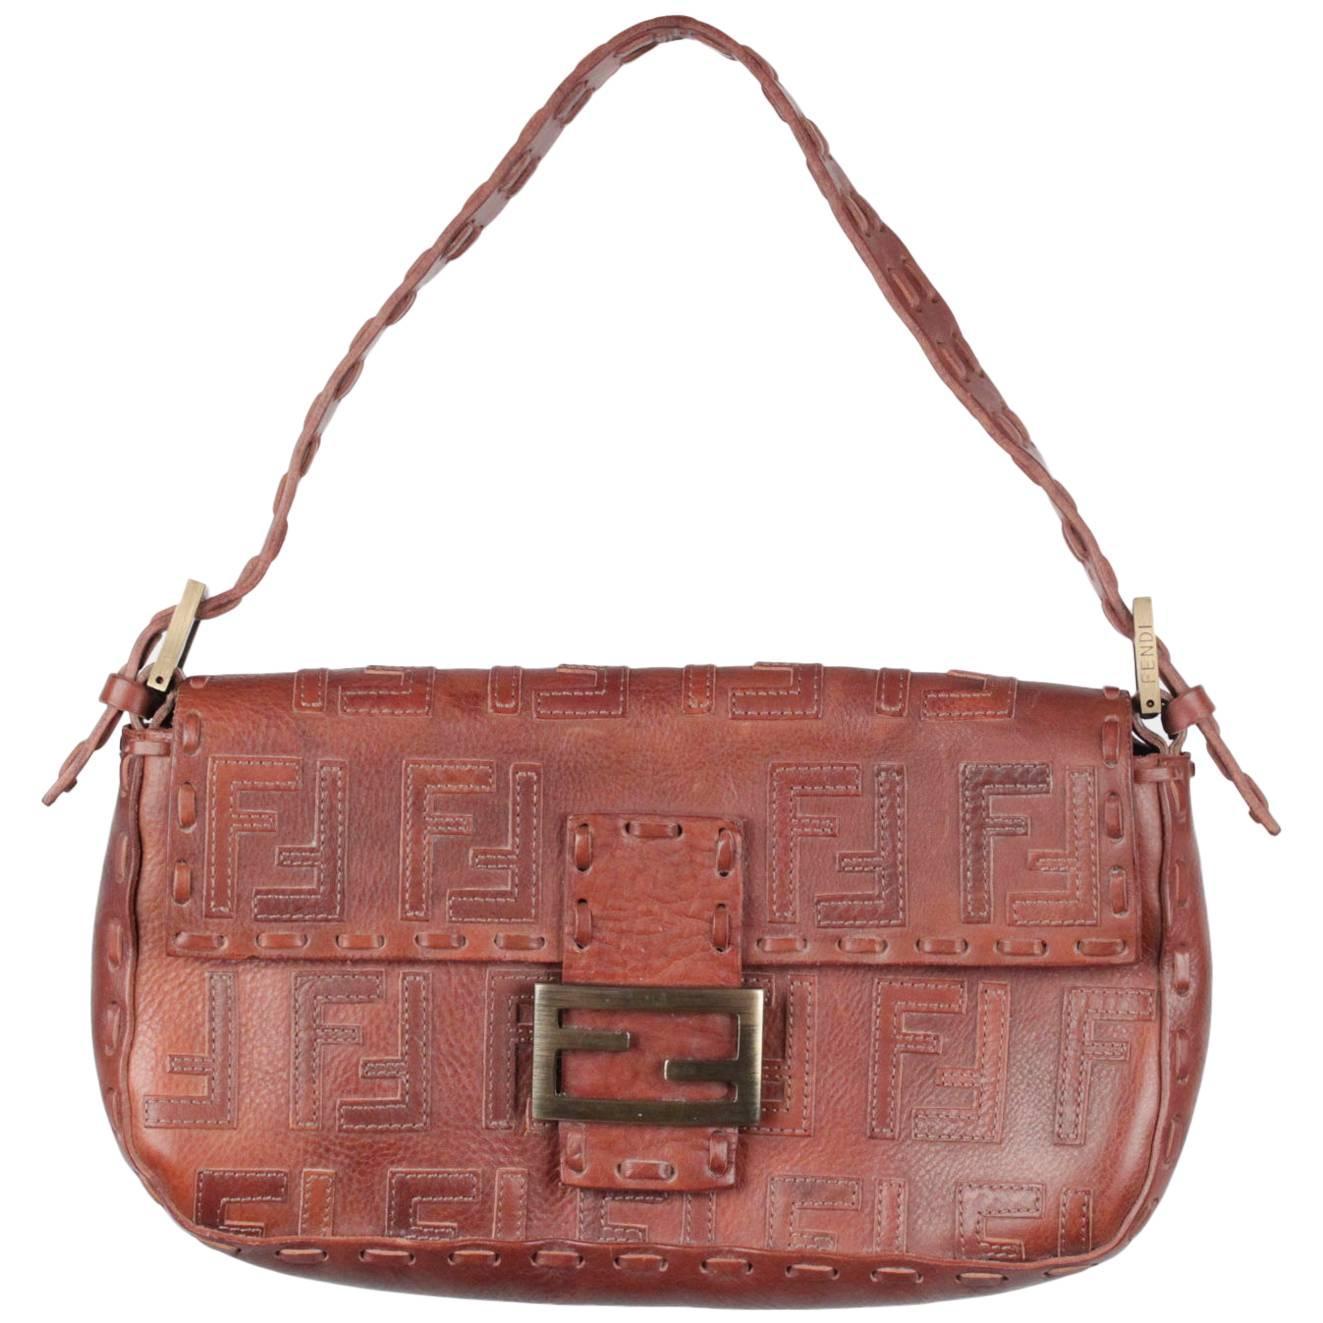 FENDI Brown Leather BAGUETTE BAG Shoulder Bag HANDBAG w/ Stitched FF